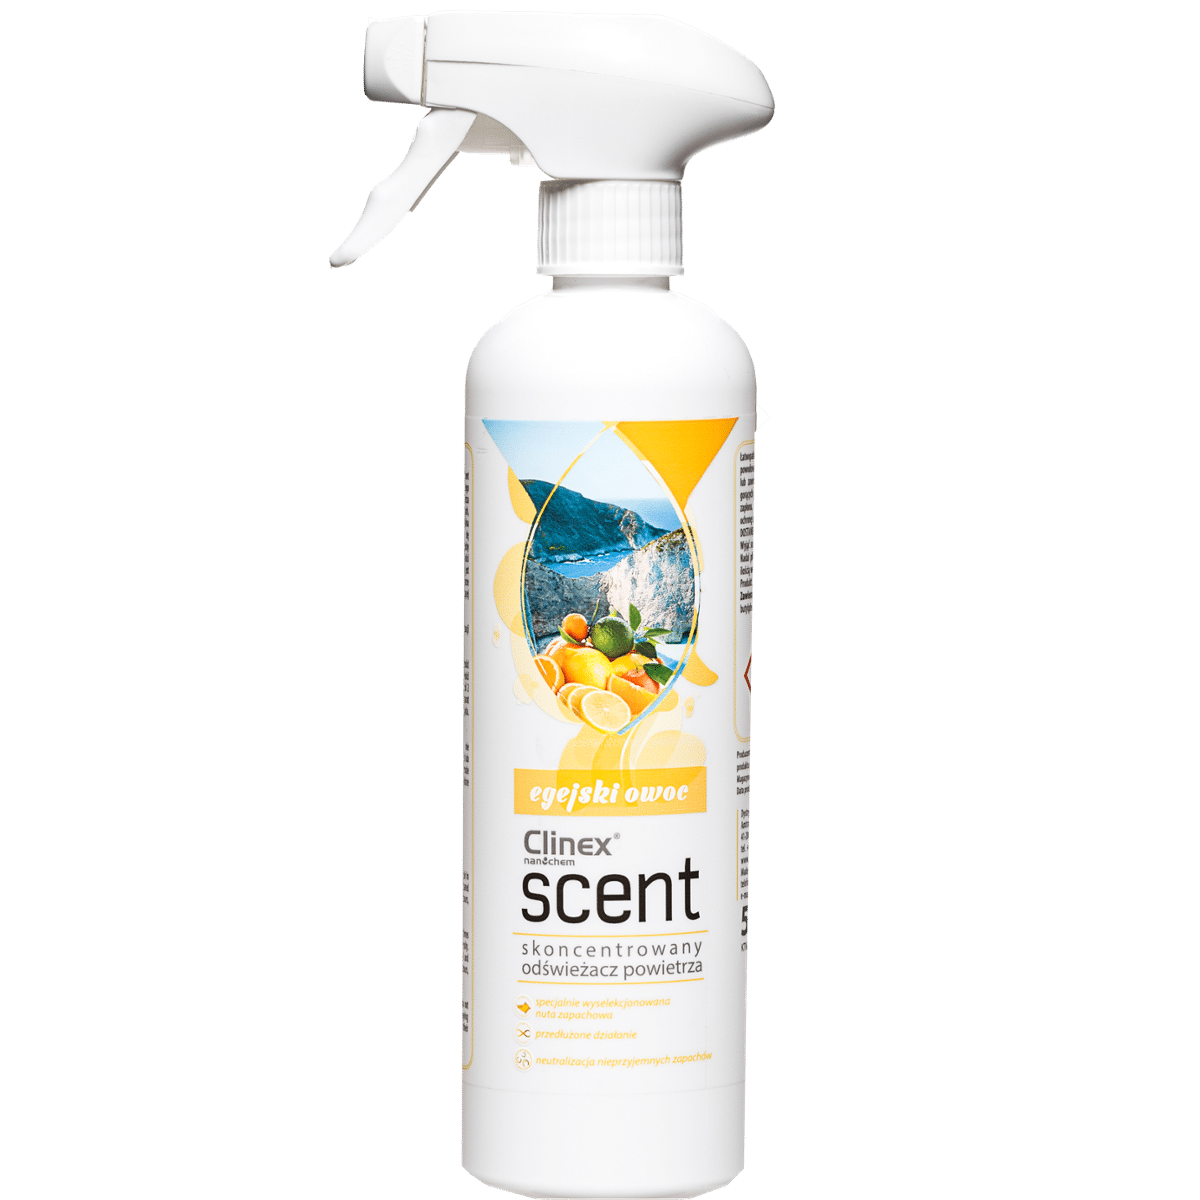 CLINEX Scent Egejski Owoc 500ml Skoncentrowany Odświeżacz Powietrza o Unikalnej Nucie Zapachowej